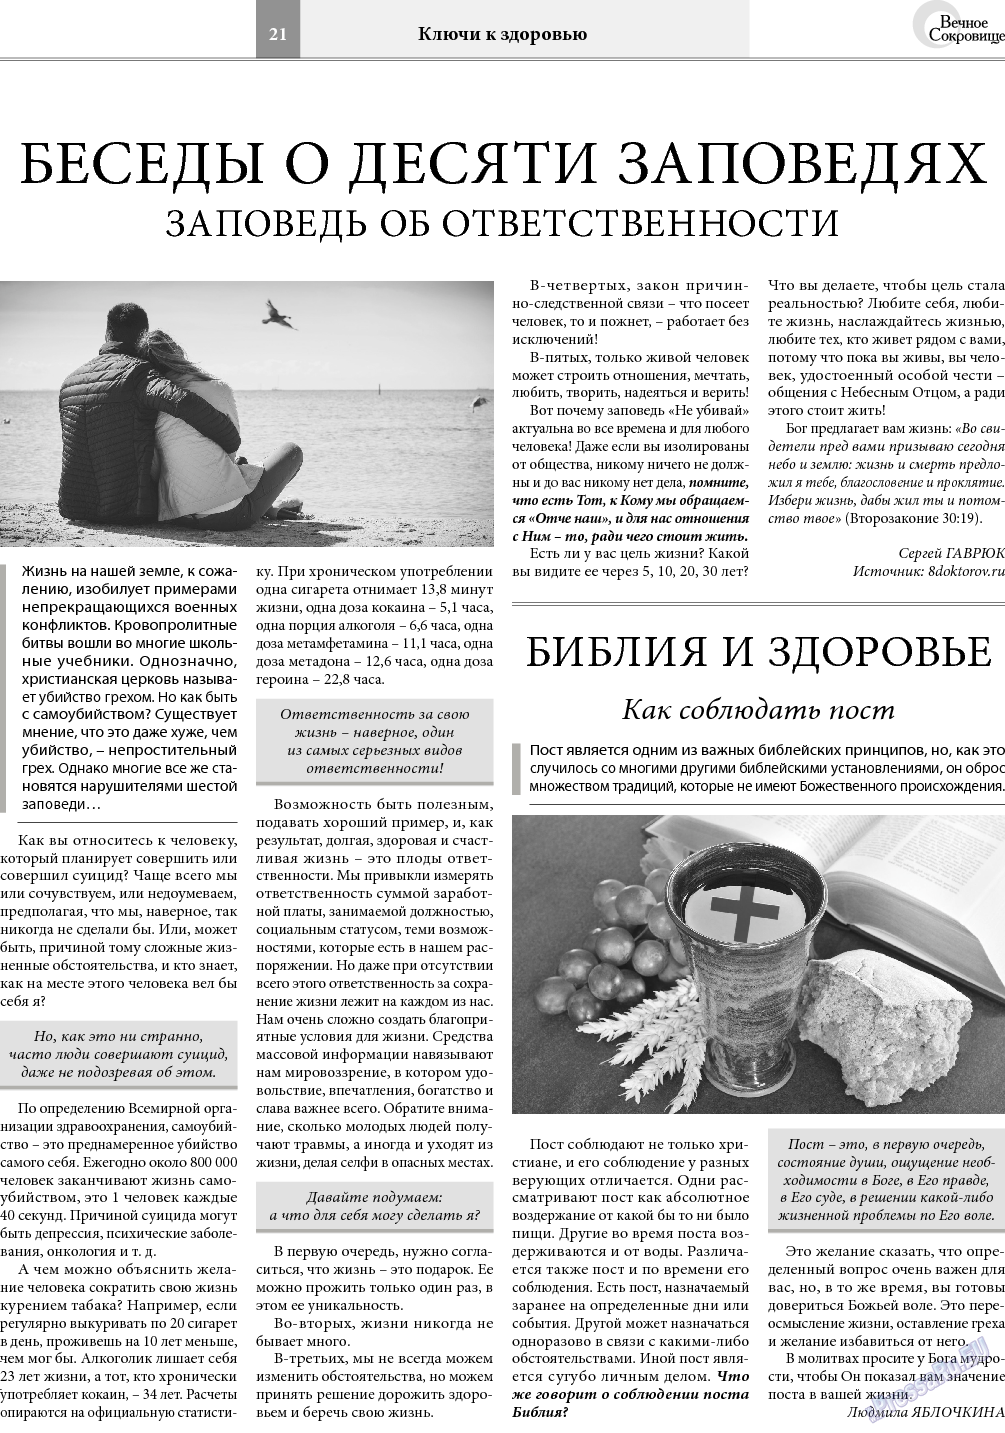 Вечное сокровище, газета. 2018 №2 стр.21